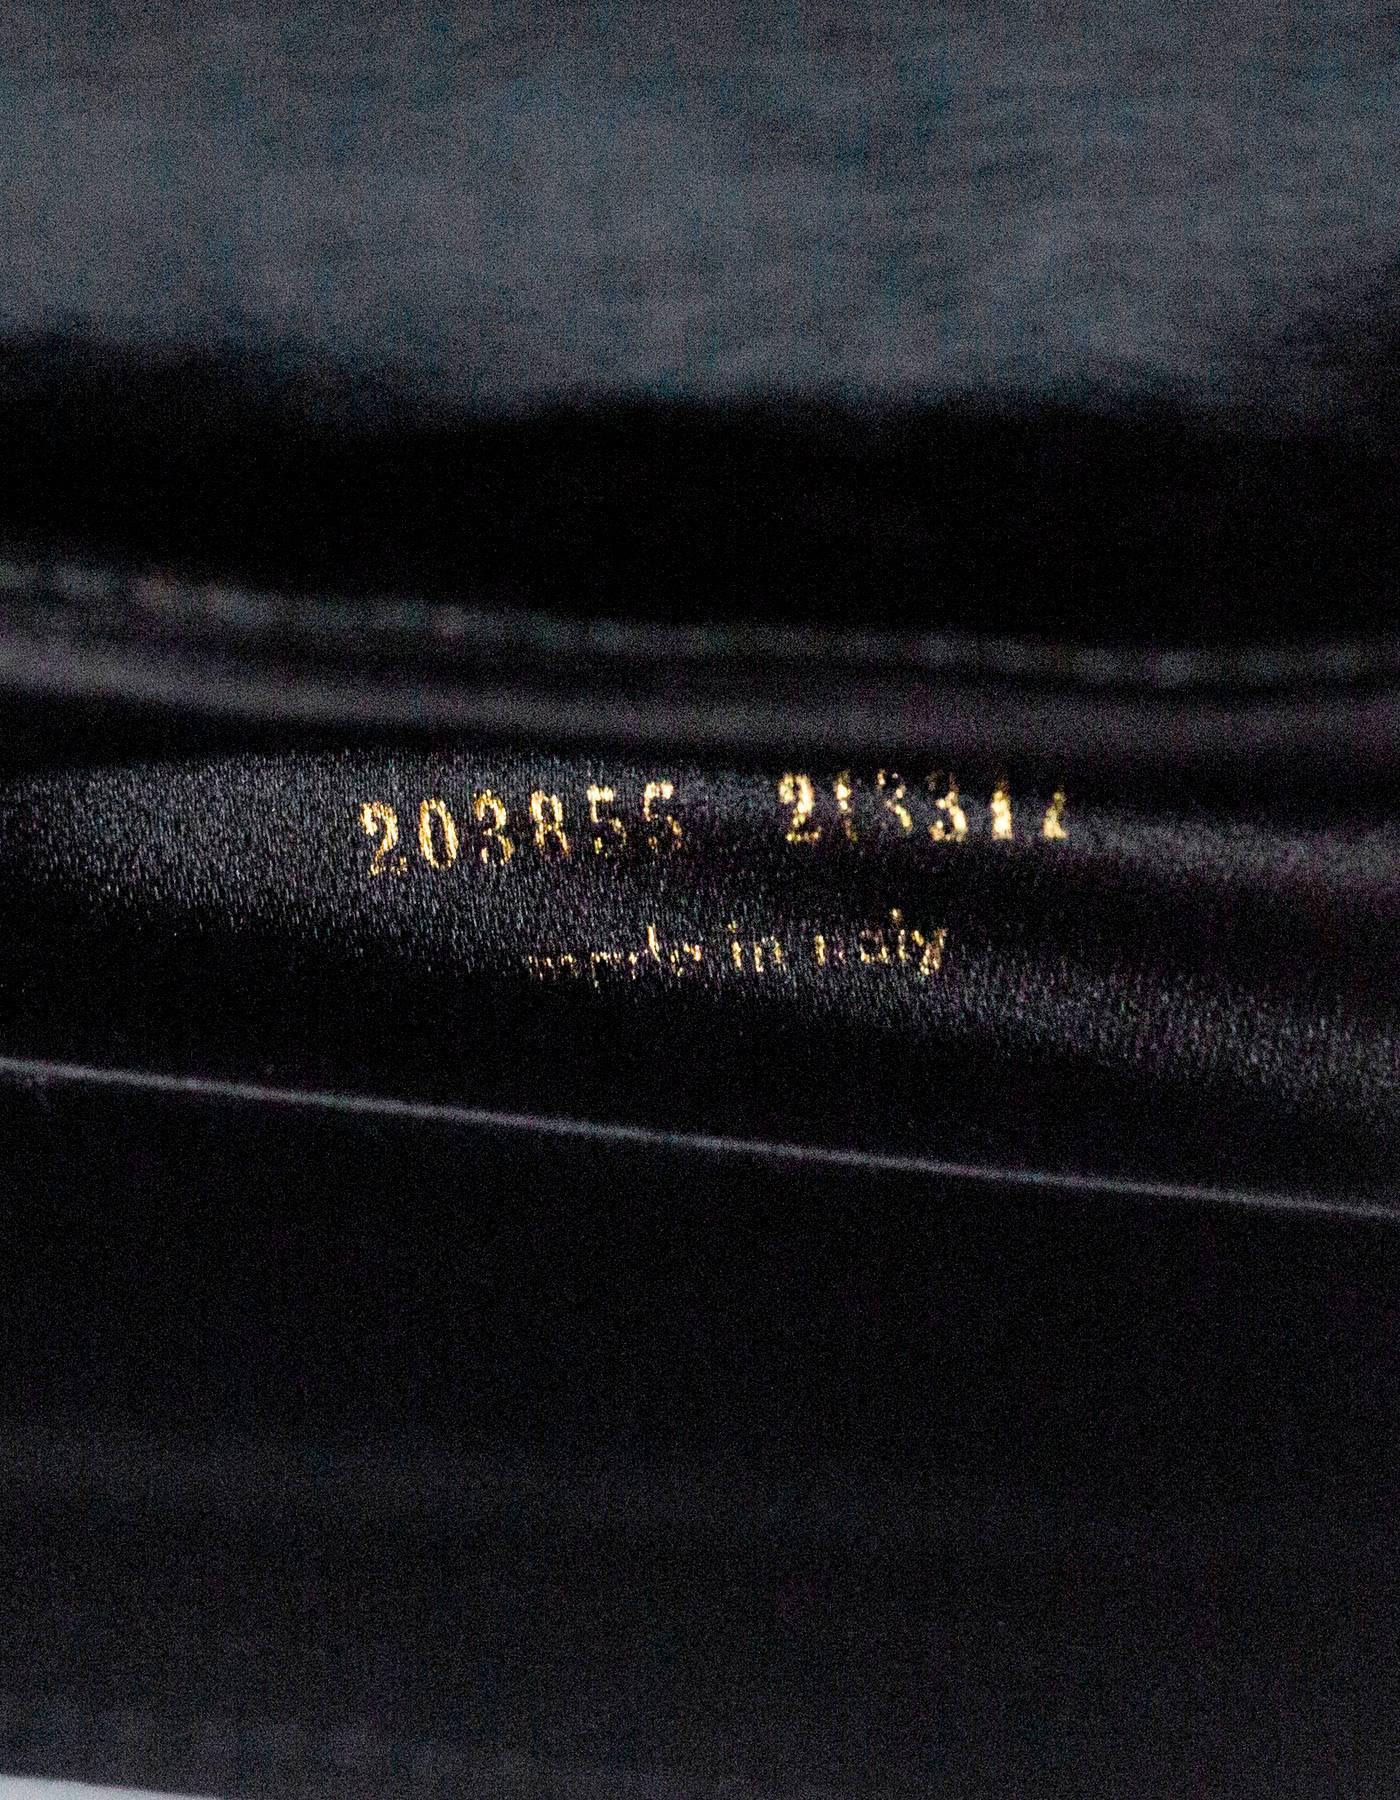 Yves Saint Laurent Black Patent Leather Belle De Jour Clutch Bag 1